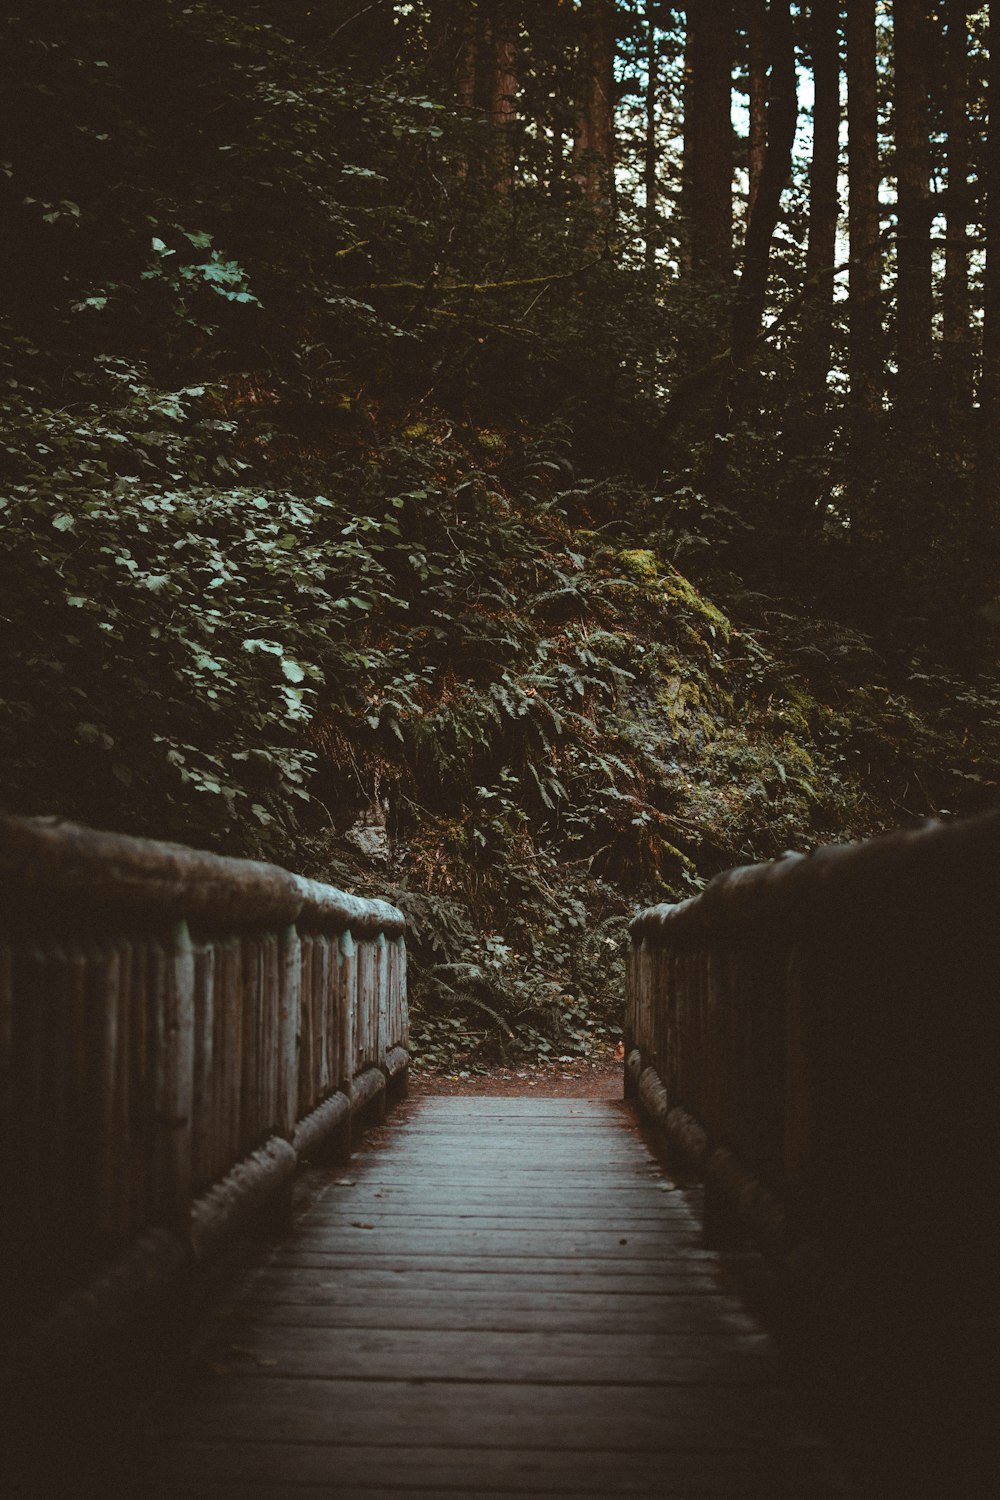 braune Holzbrücke in der Nähe von grünen Bäumen